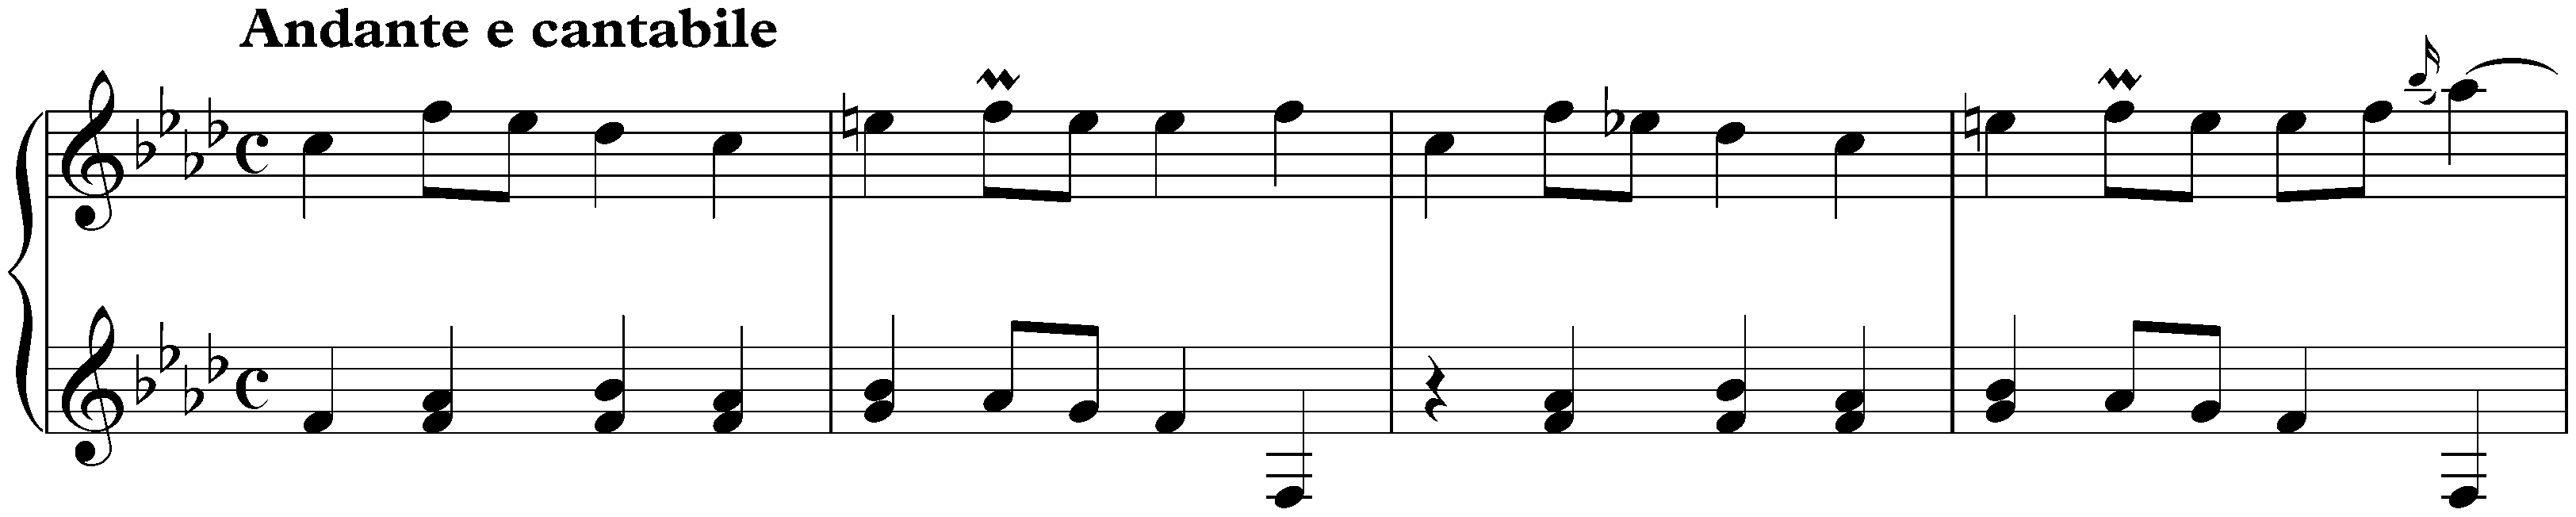 Sonata in F minor, K. 481